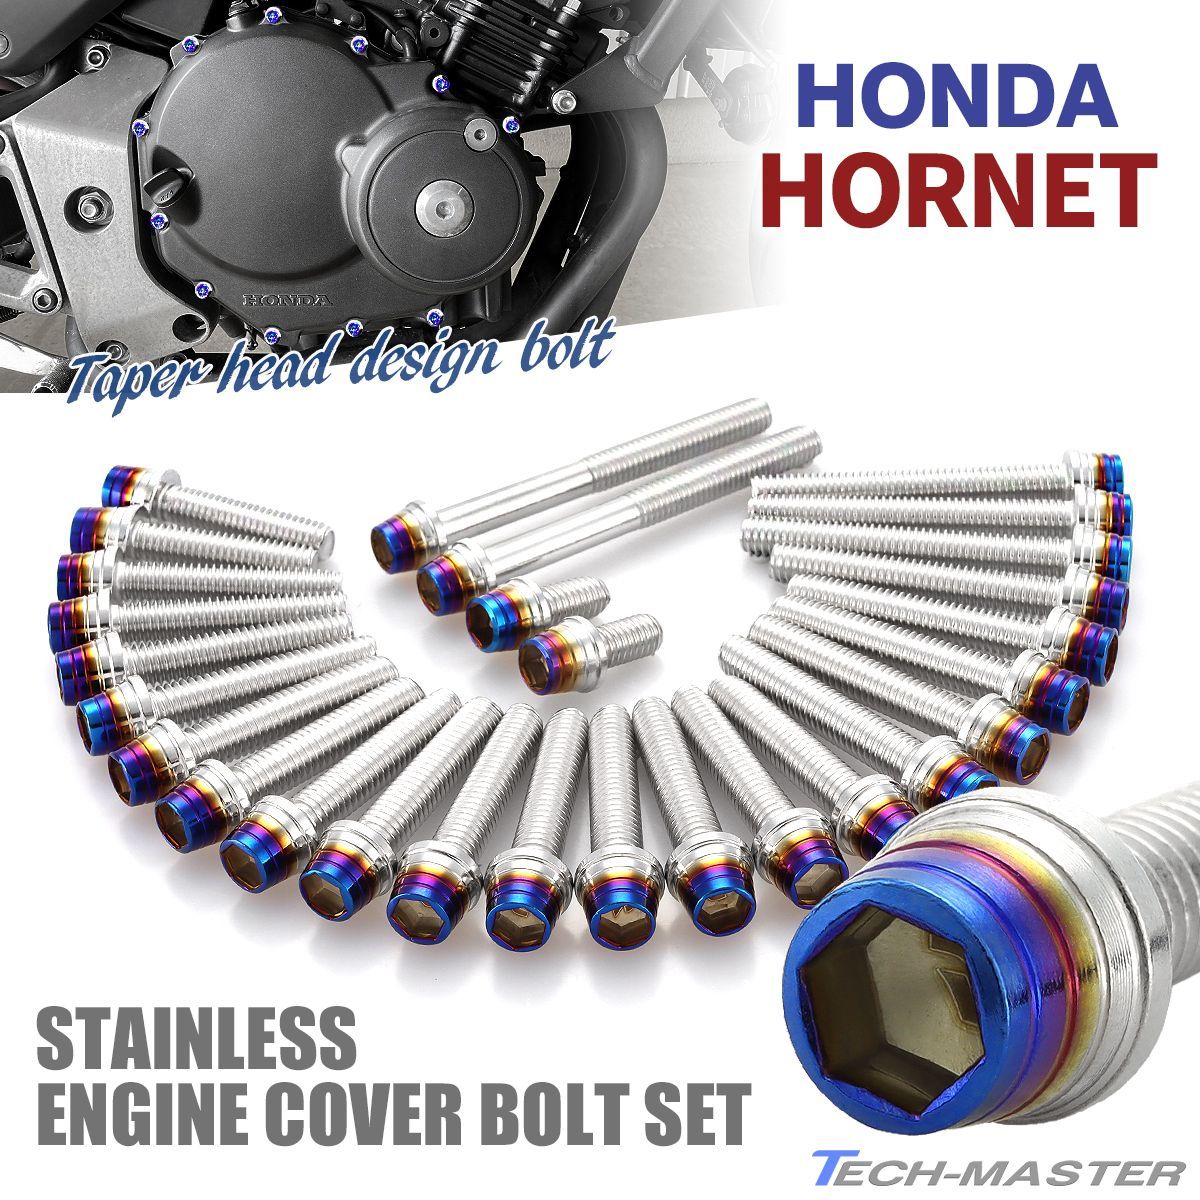 HONDA ホーネット エンジンカバー クランクケース ボルト 61